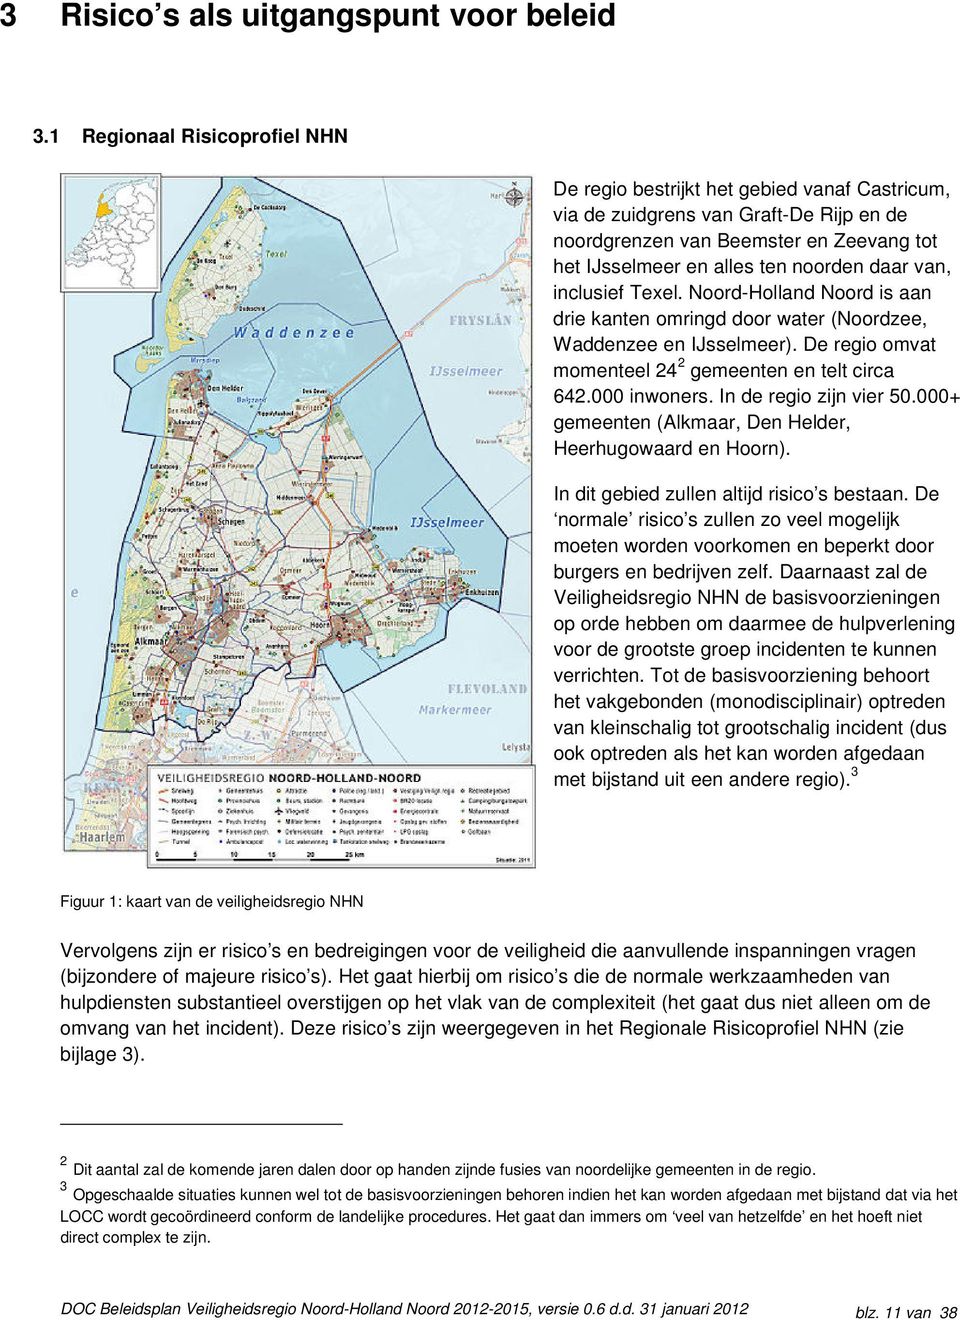 van, inclusief Texel. Noord-Holland Noord is aan drie kanten omringd door water (Noordzee, Waddenzee en IJsselmeer). De regio omvat momenteel 24 2 gemeenten en telt circa 642.000 inwoners.